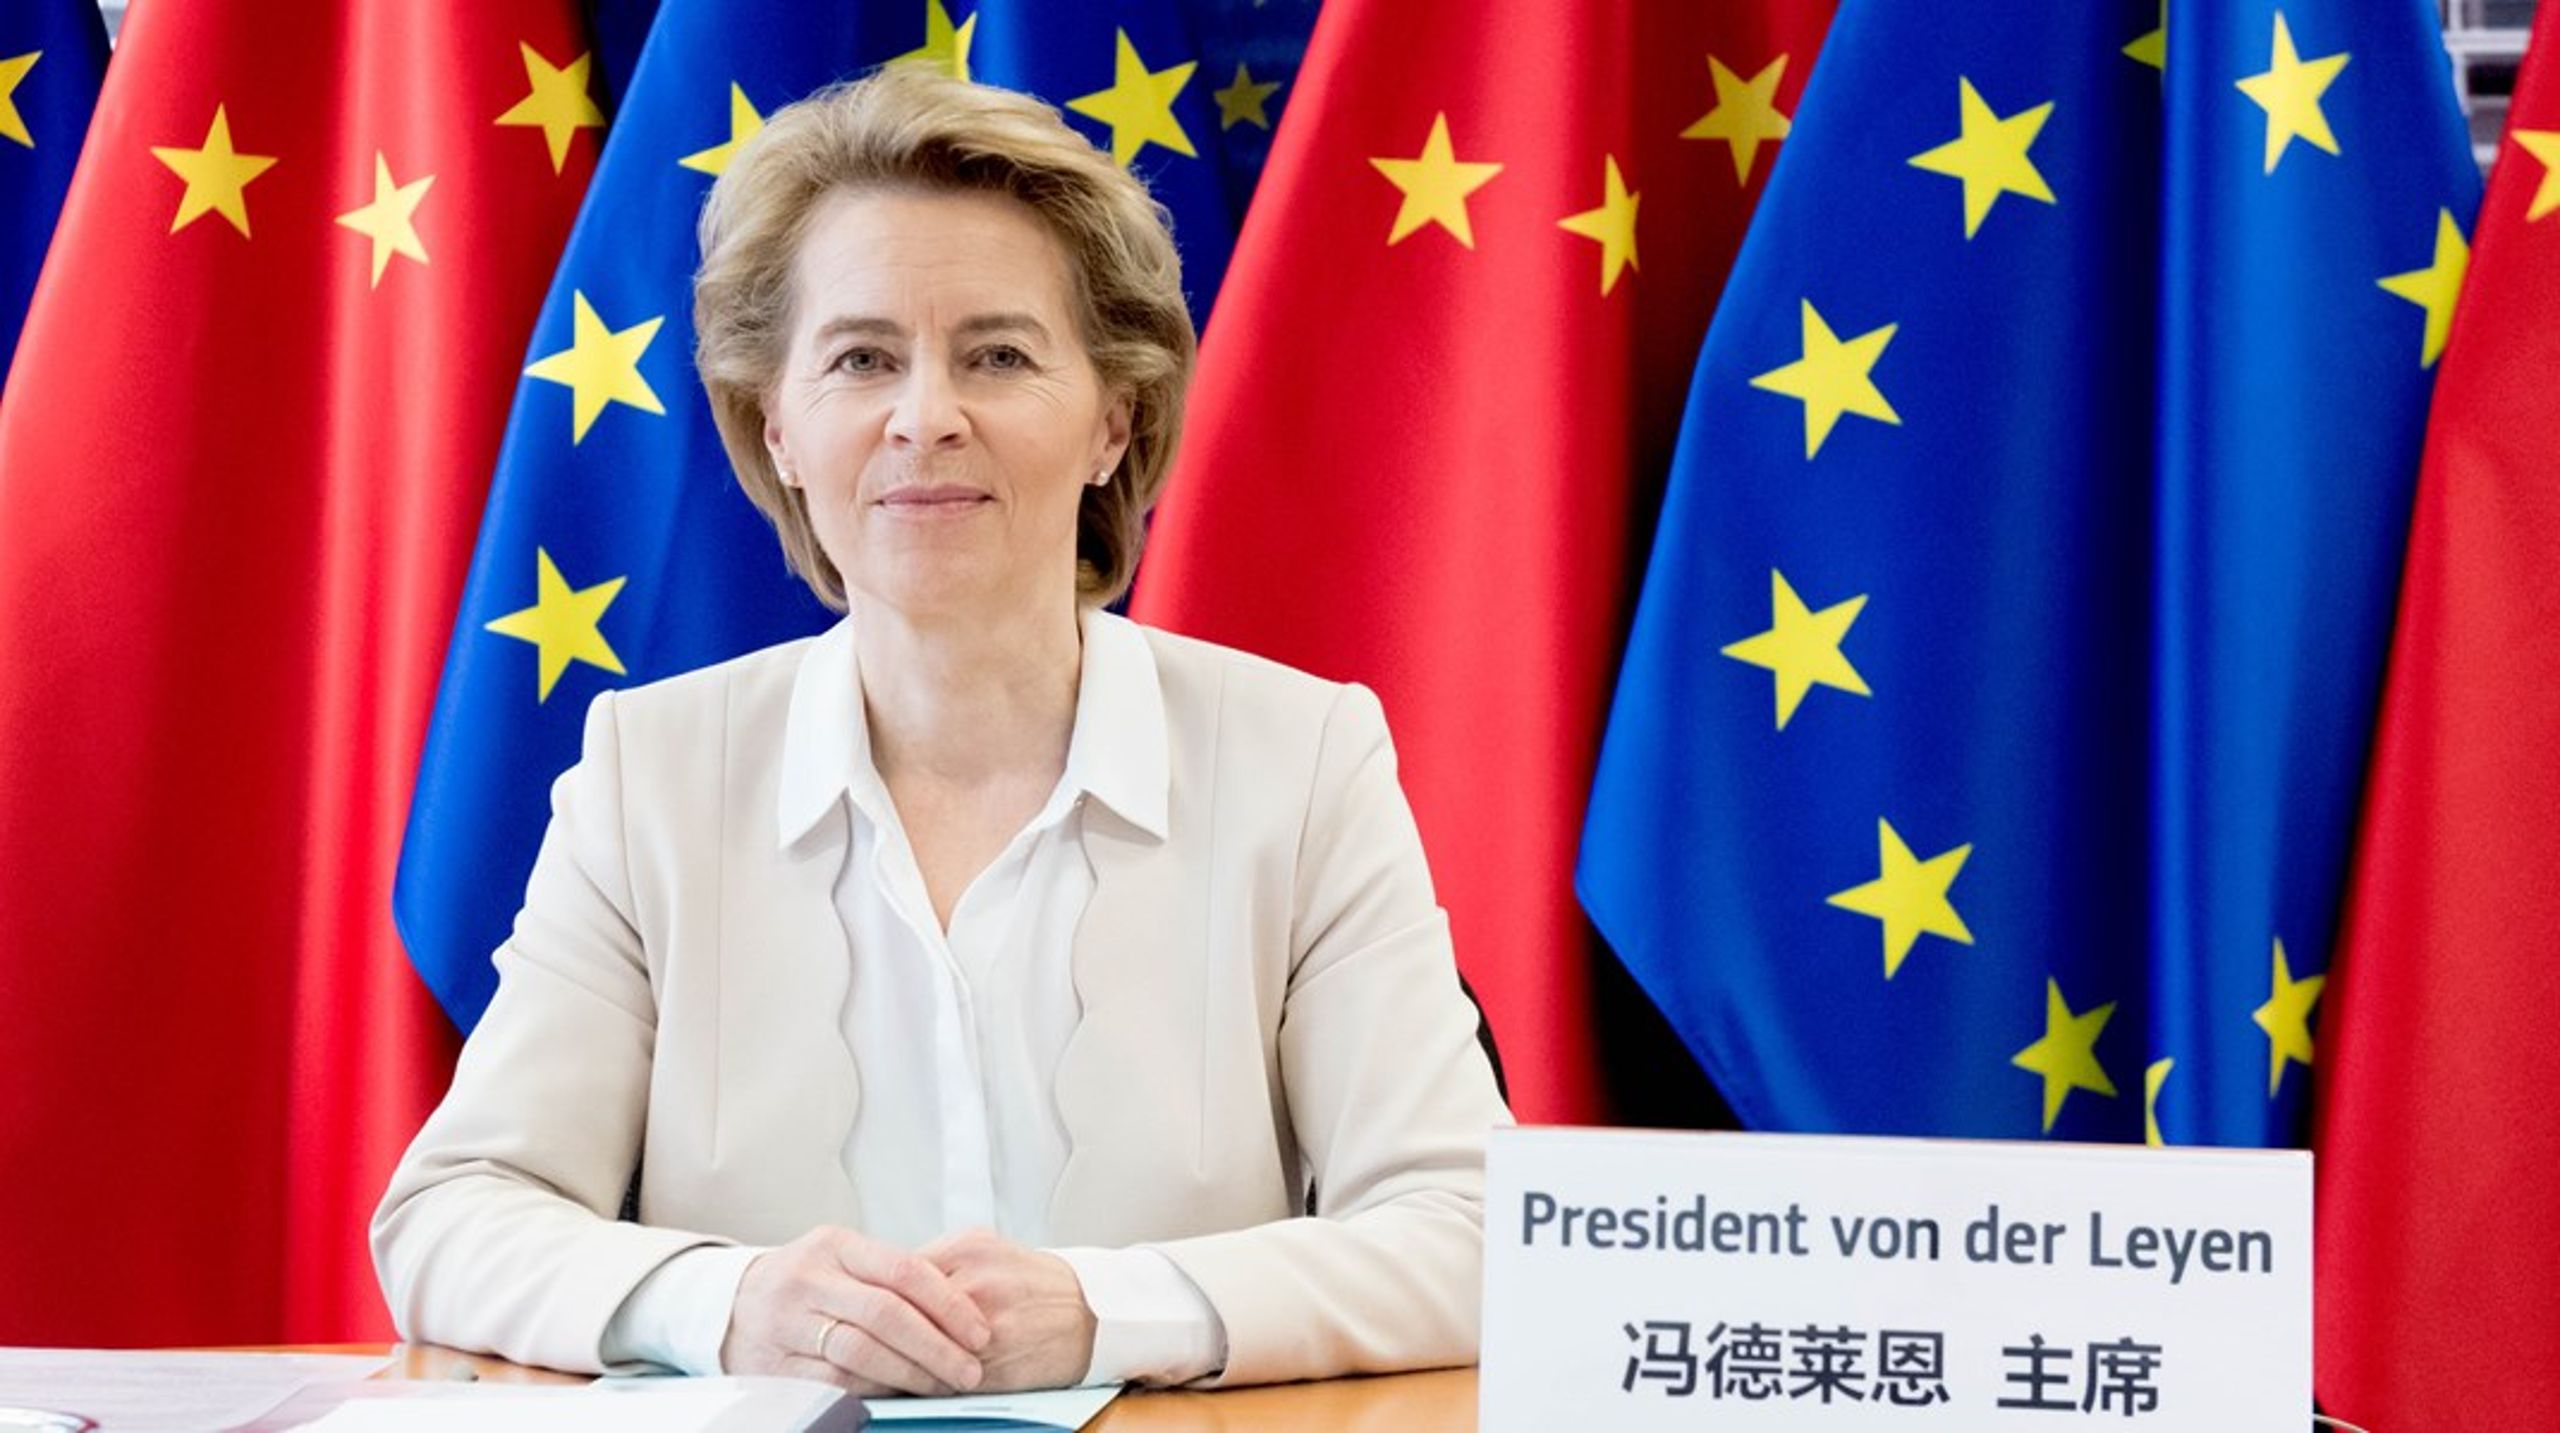 I dagarna klubbade ministerrådet en rad åtgärder för att göra EU mindre beroende&nbsp;av Kinas resurser för den gröna omställningen, genom den kritiska råmaterialsförordningen. Men det räcker inte för att vara riktigt optimistisk å EU:s vägnar, säger tankesmedjan Europa i en ny analys.